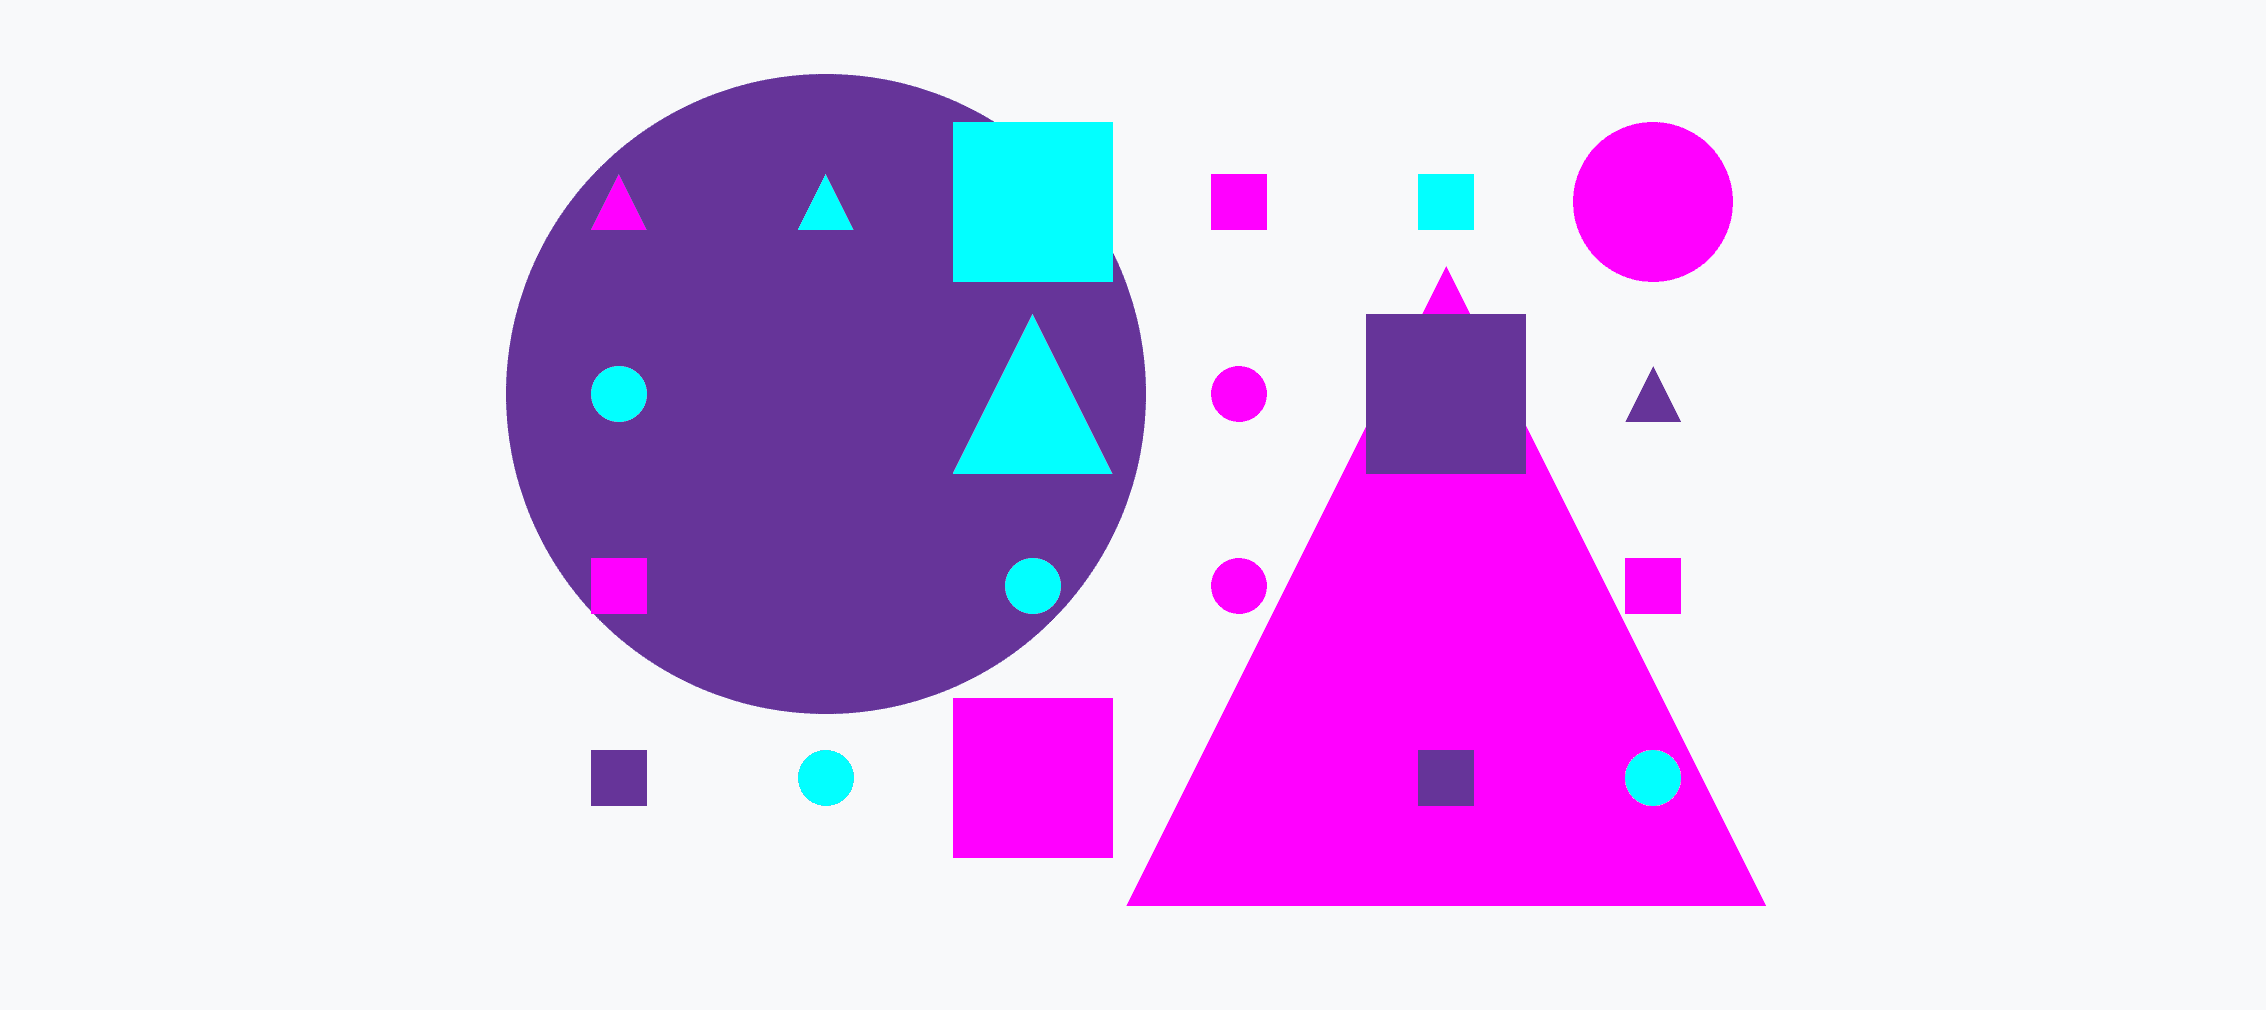 크고 작은 원, 삼각형, 사각형으로 이루어진 다채로운 그리드입니다.